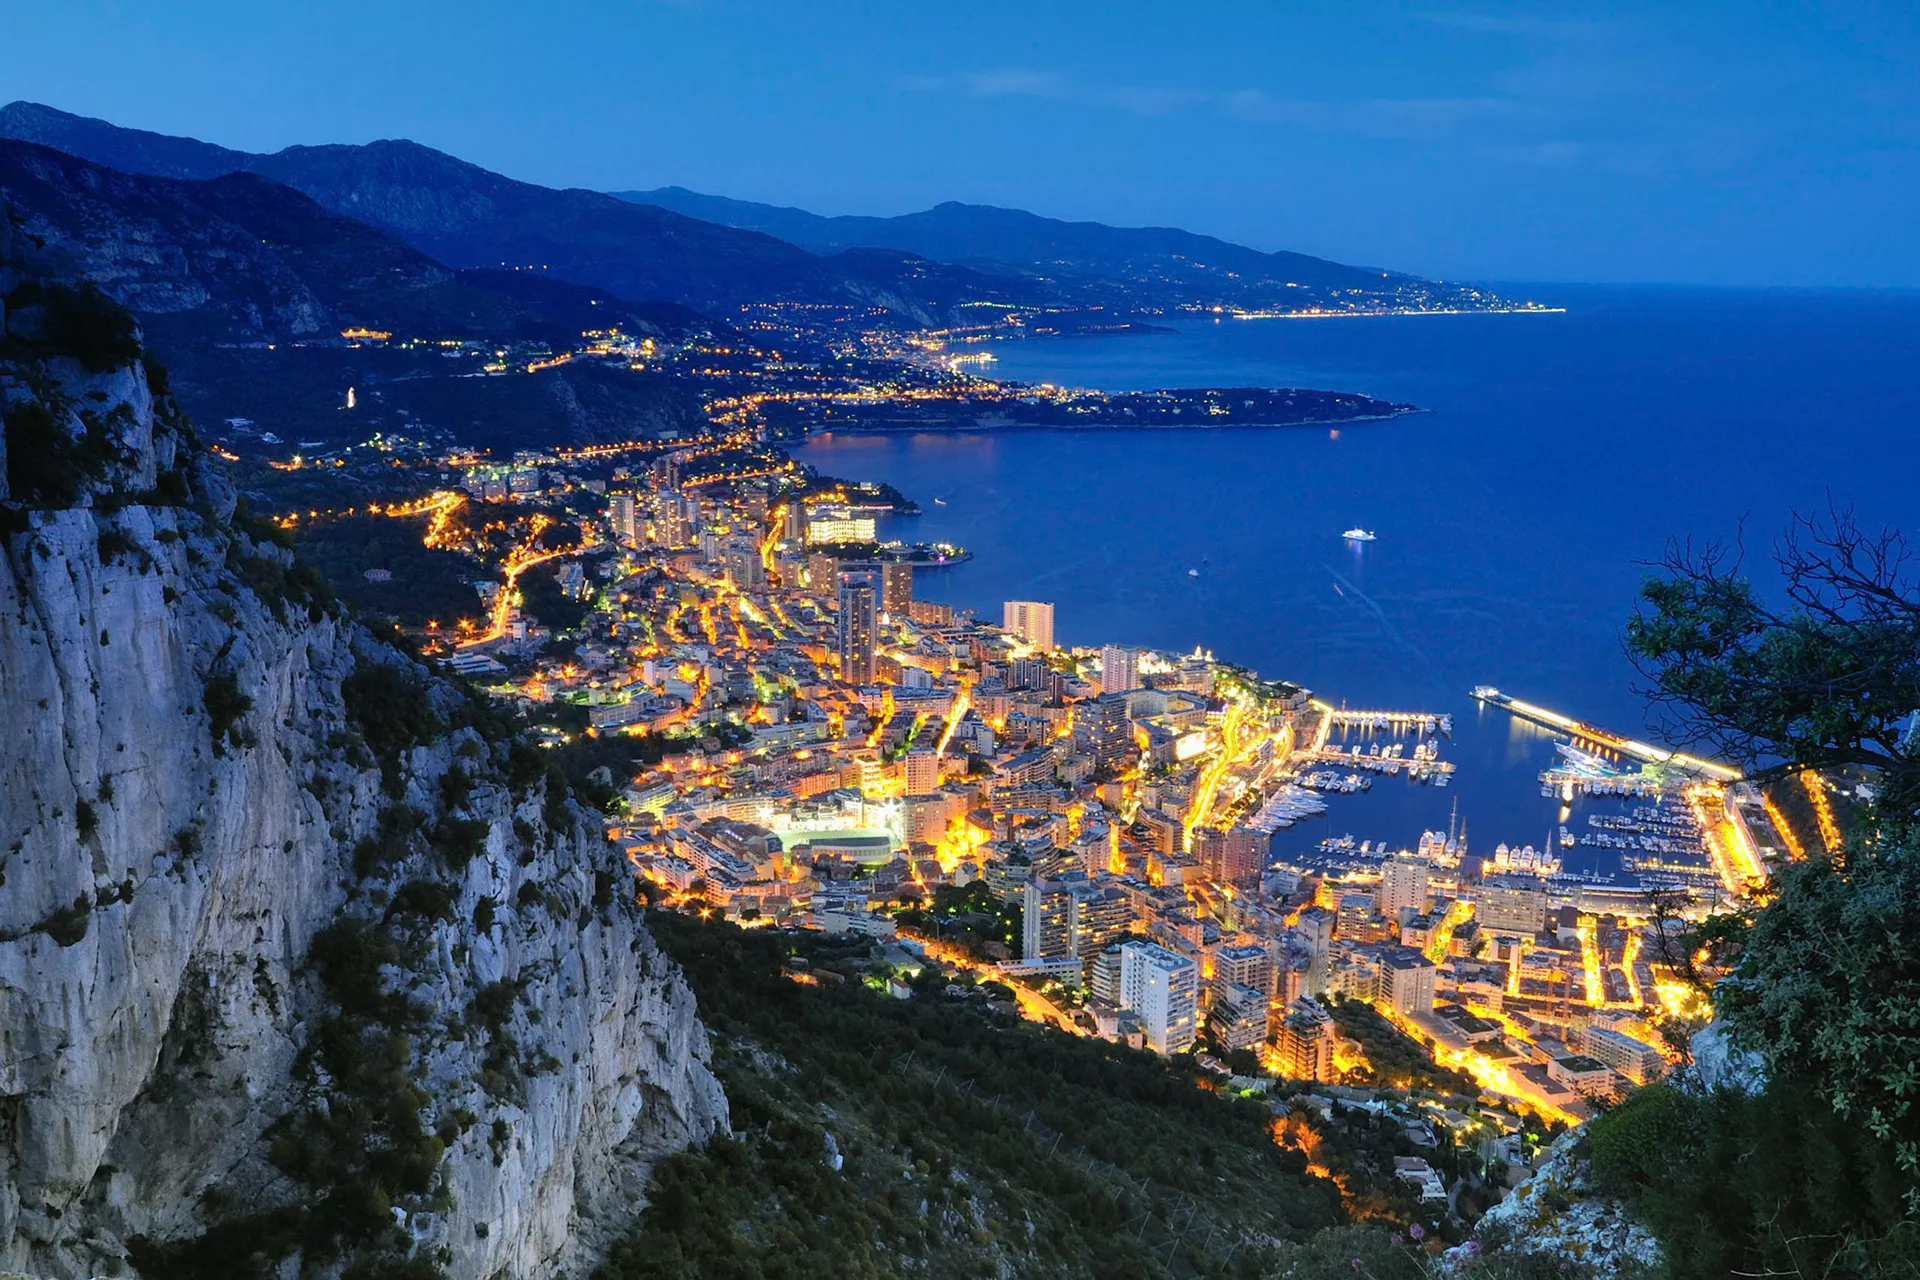 Tete de Chien in Monaco, Europe | Trekking & Hiking - Rated 0.9